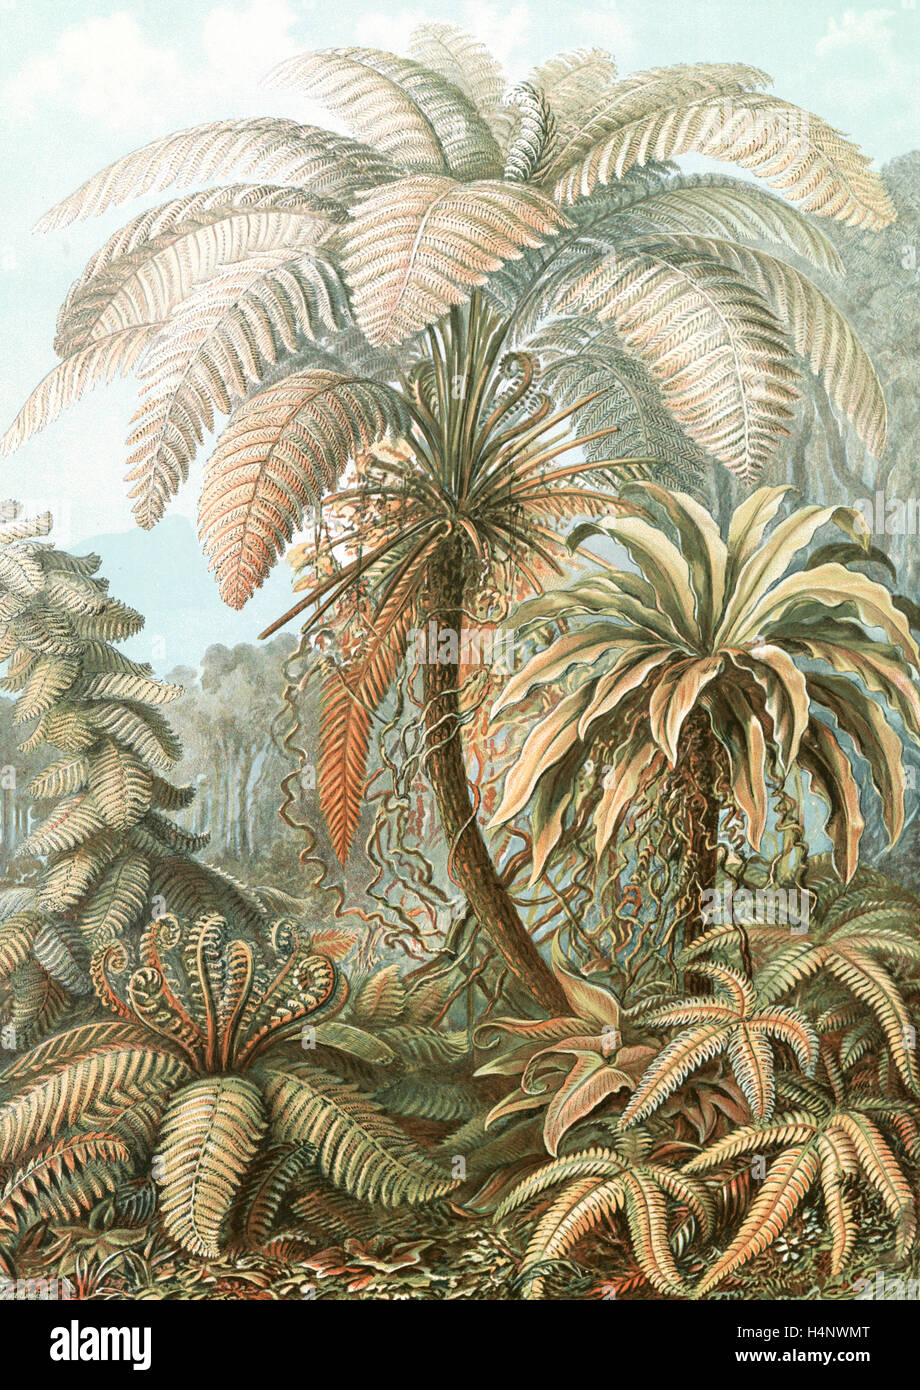 L'illustration montre les fougères. Filicinae. - Laubfarne, 1 : impression photomécanique couleur feuille ; 36 x 26 cm., 1904. Ernst Haeckel Banque D'Images